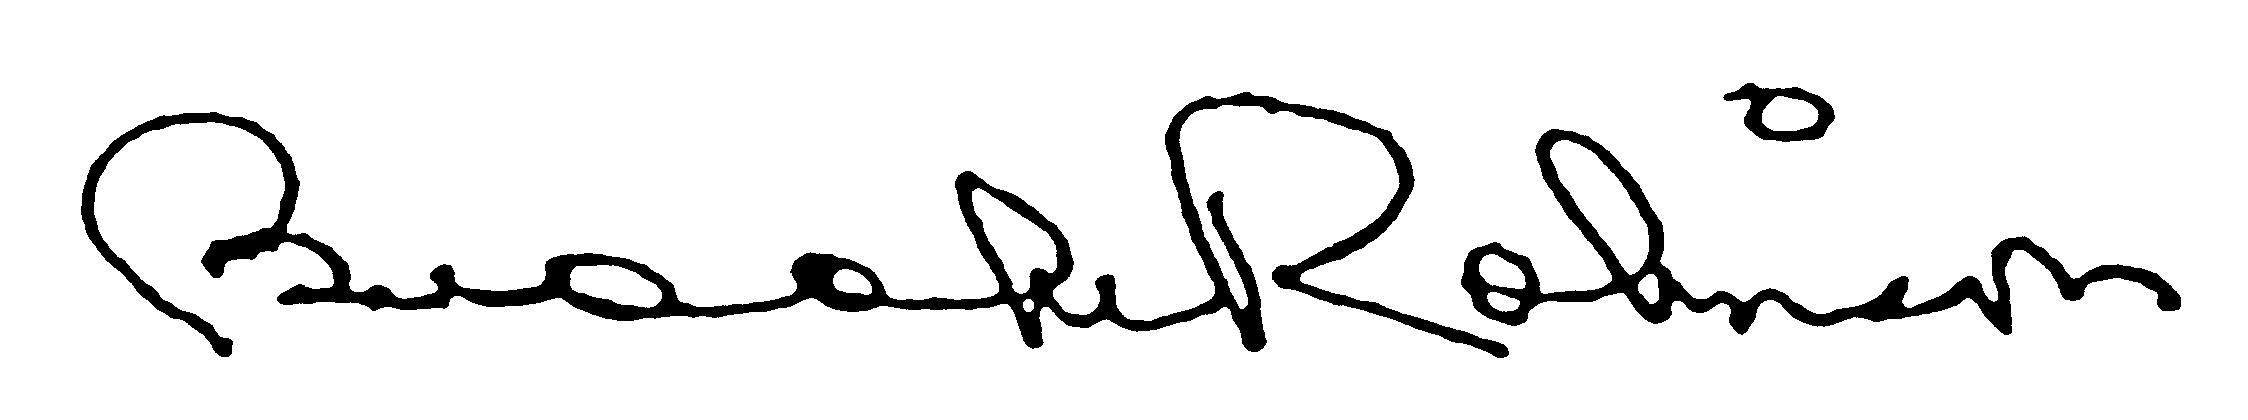 Brooks Signature.JPG